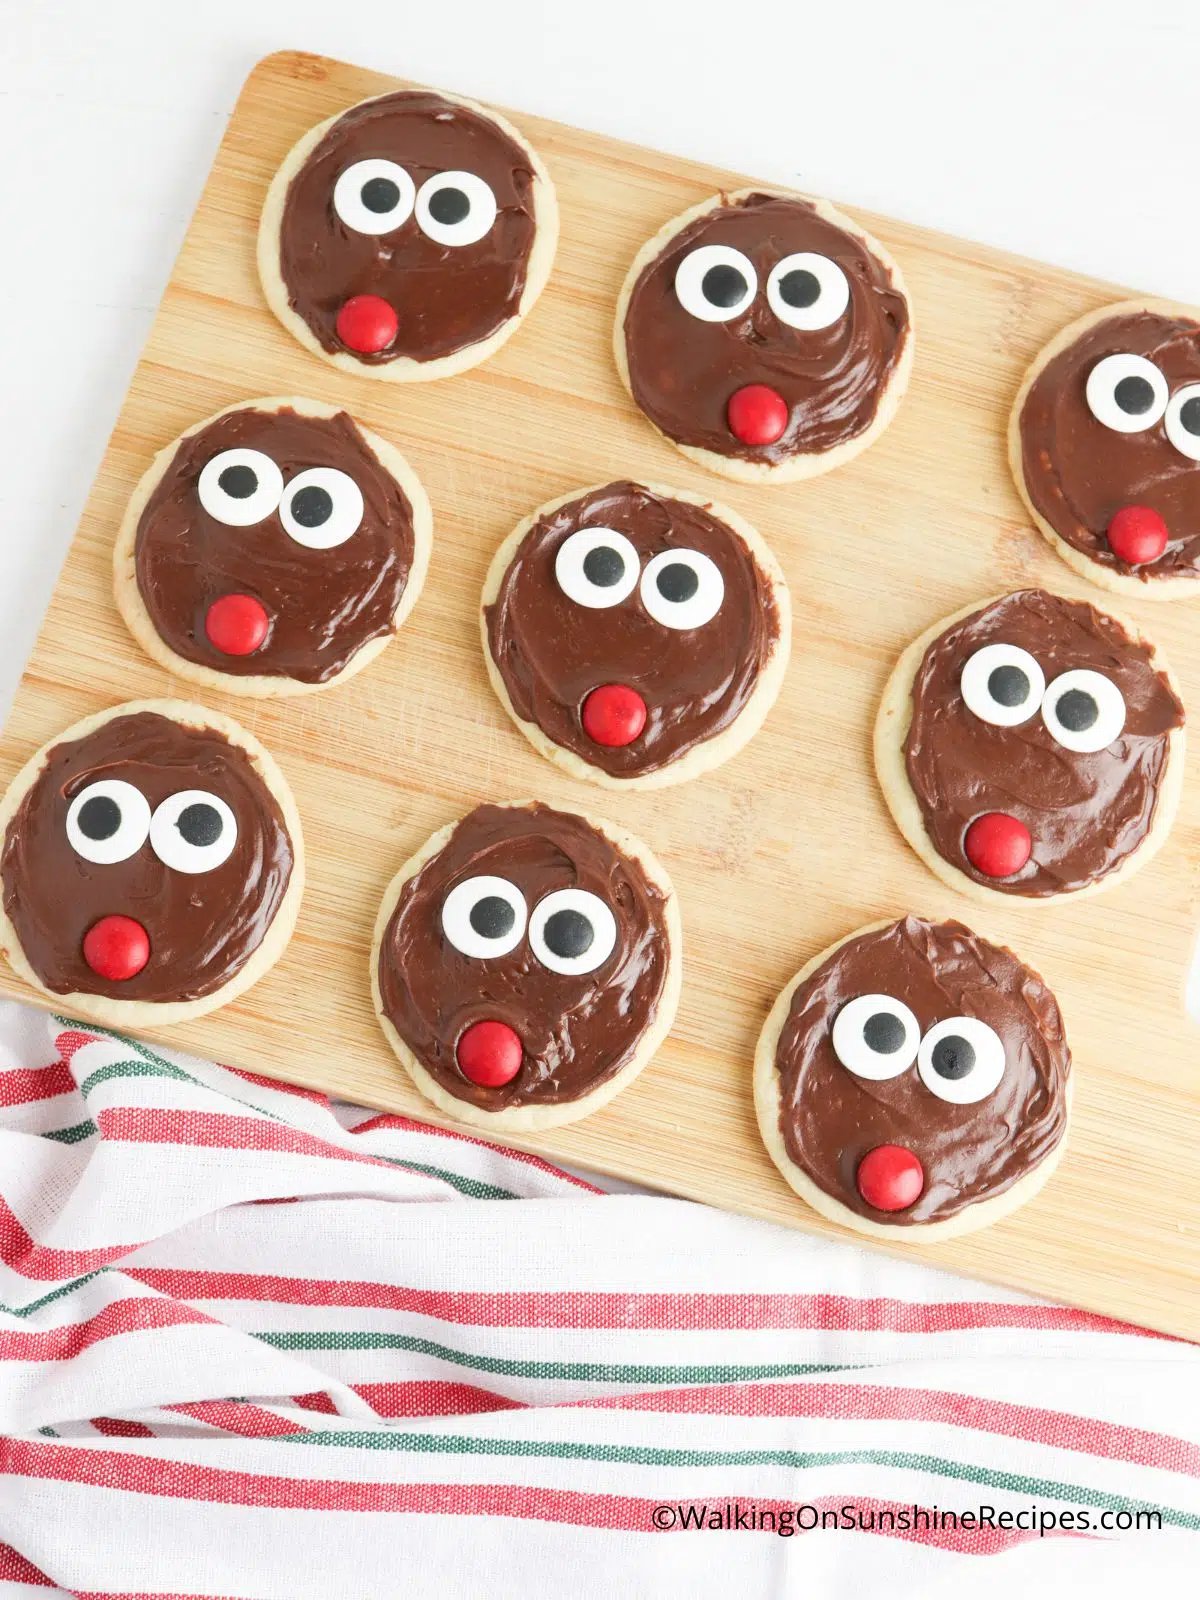 decorate cookies to look like reindeers.